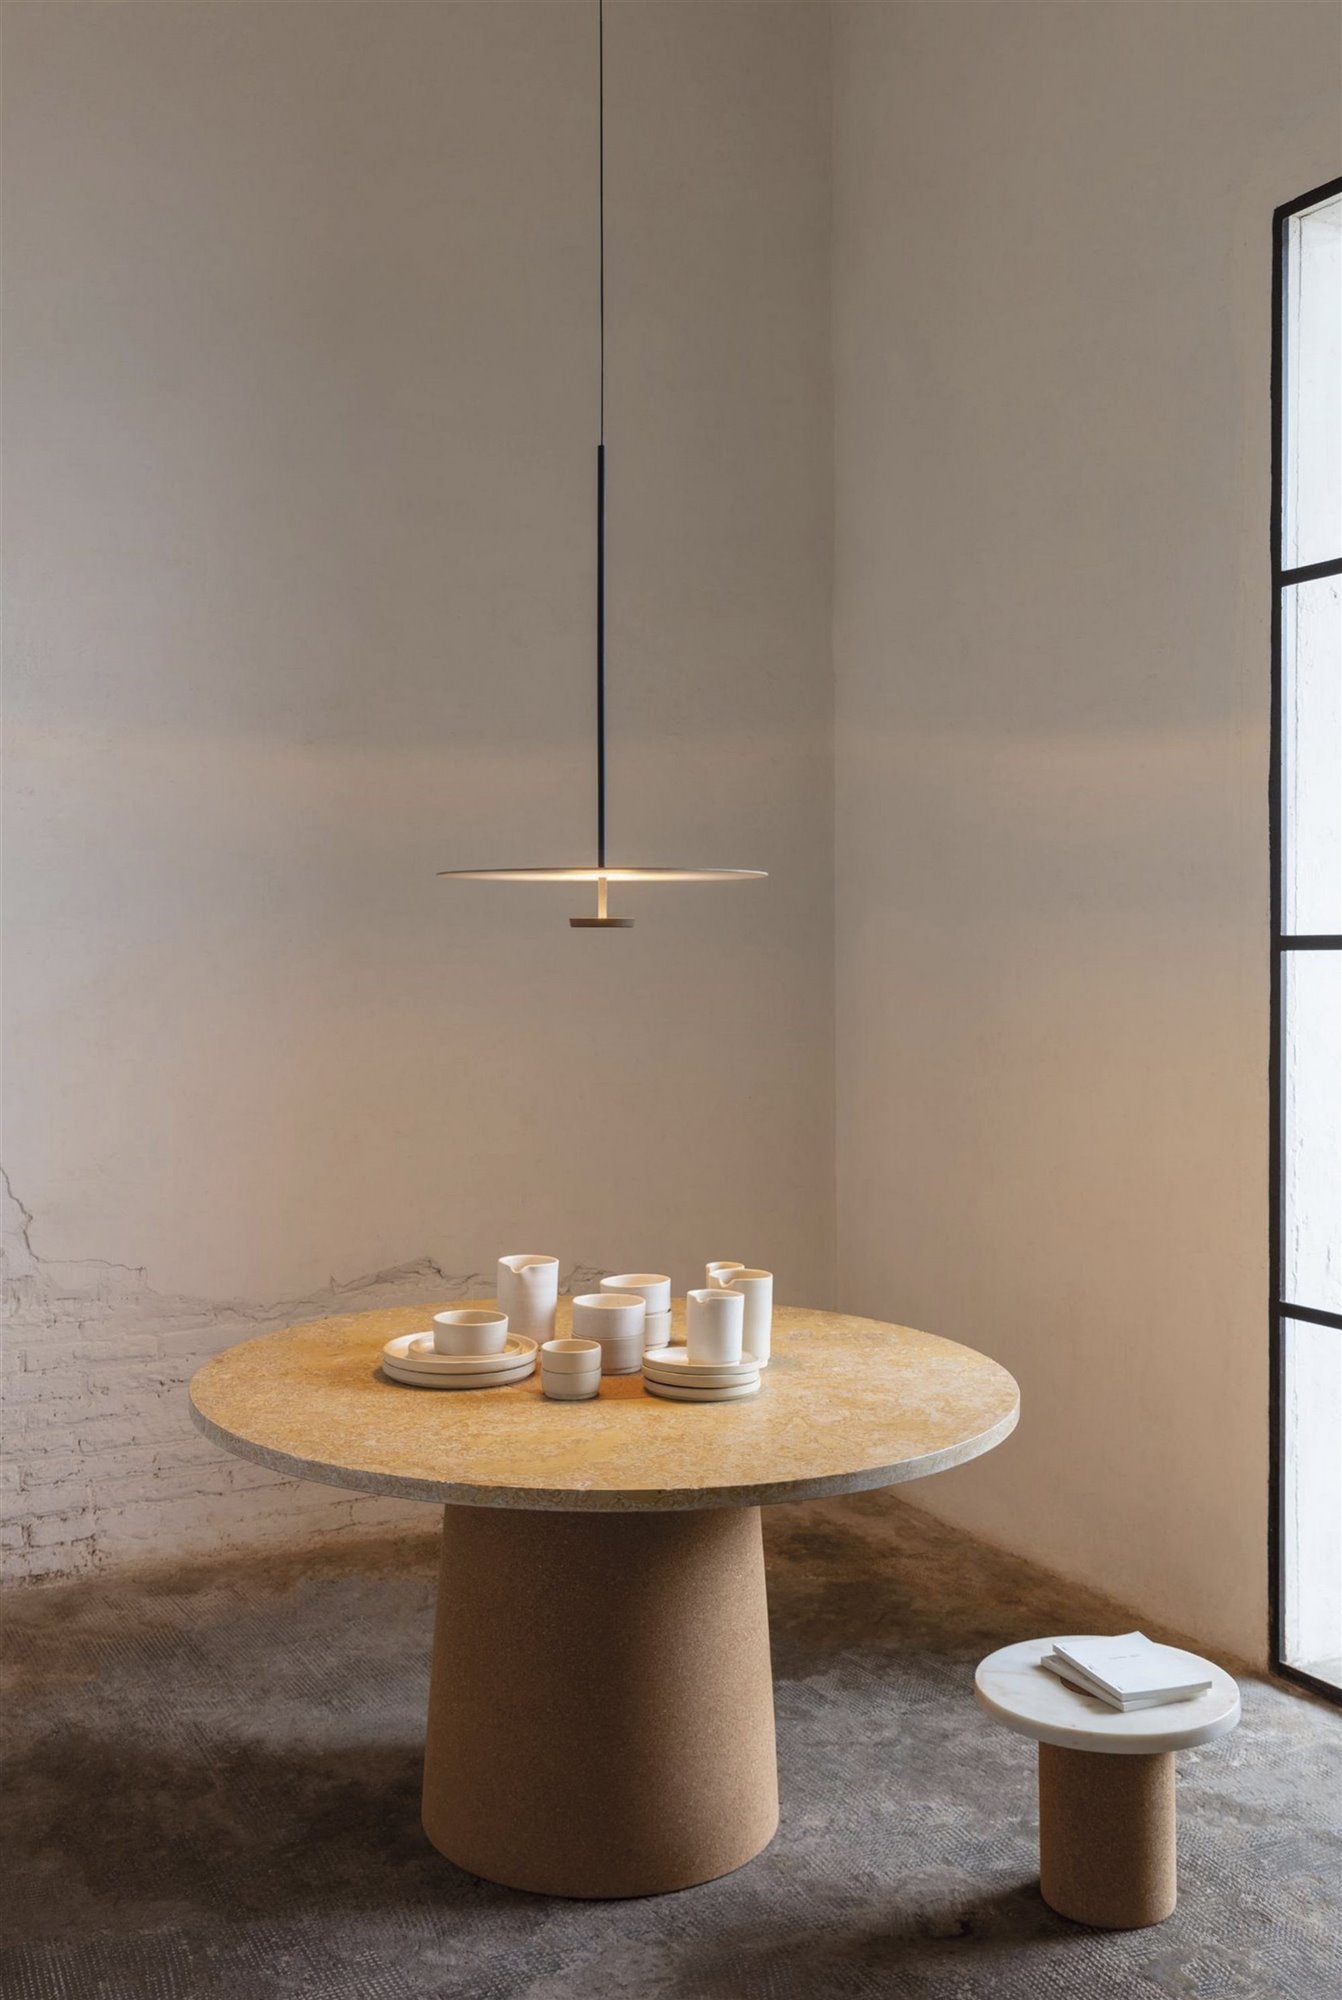 lámpara de techo negra minimalista y mesa de comedor redonda de madera con vajilla blanca y taburete